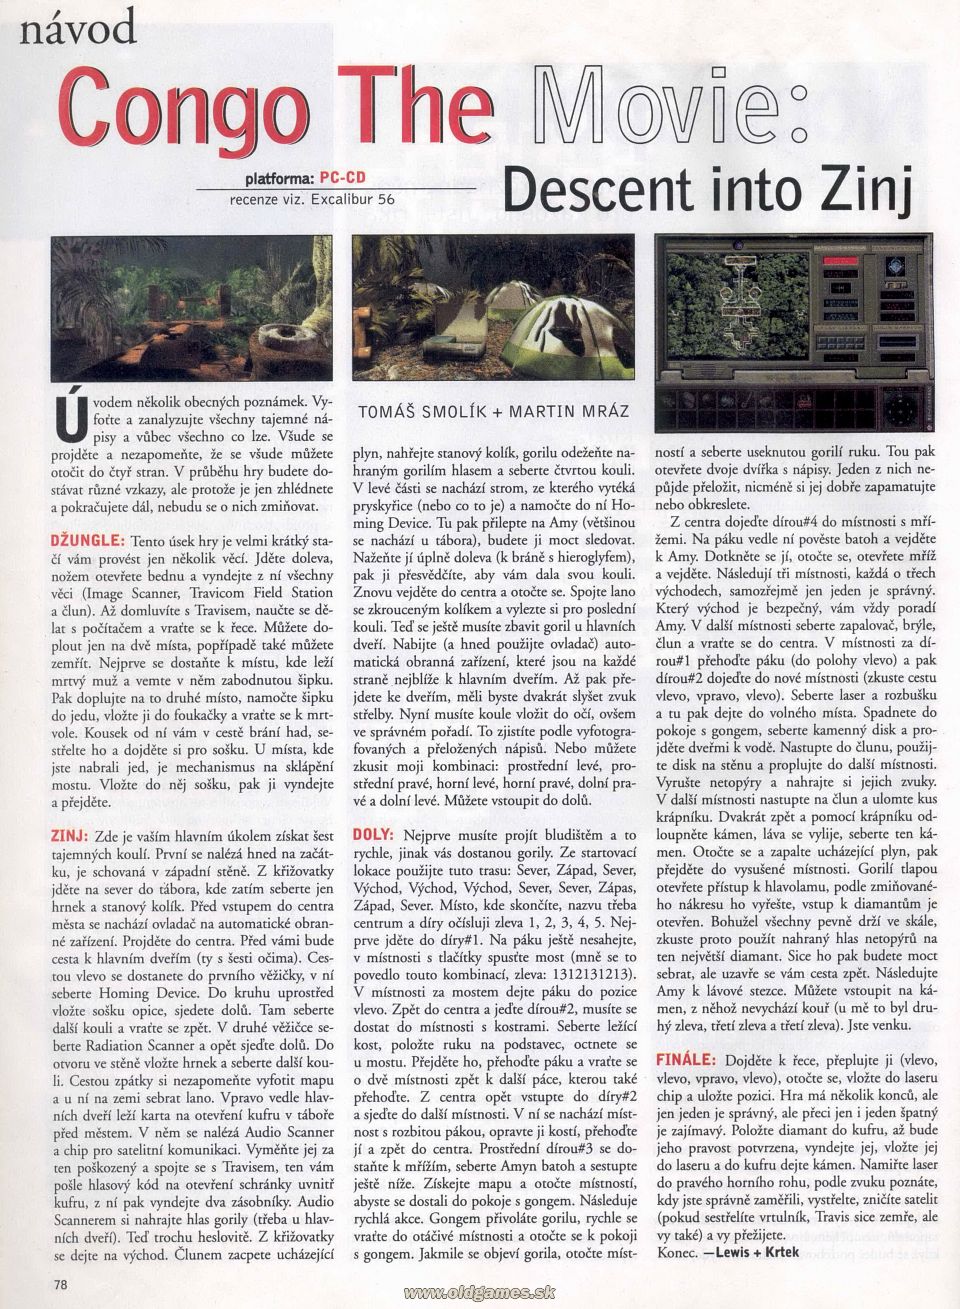 Congo The Movie: Descent into Zinj - Návod